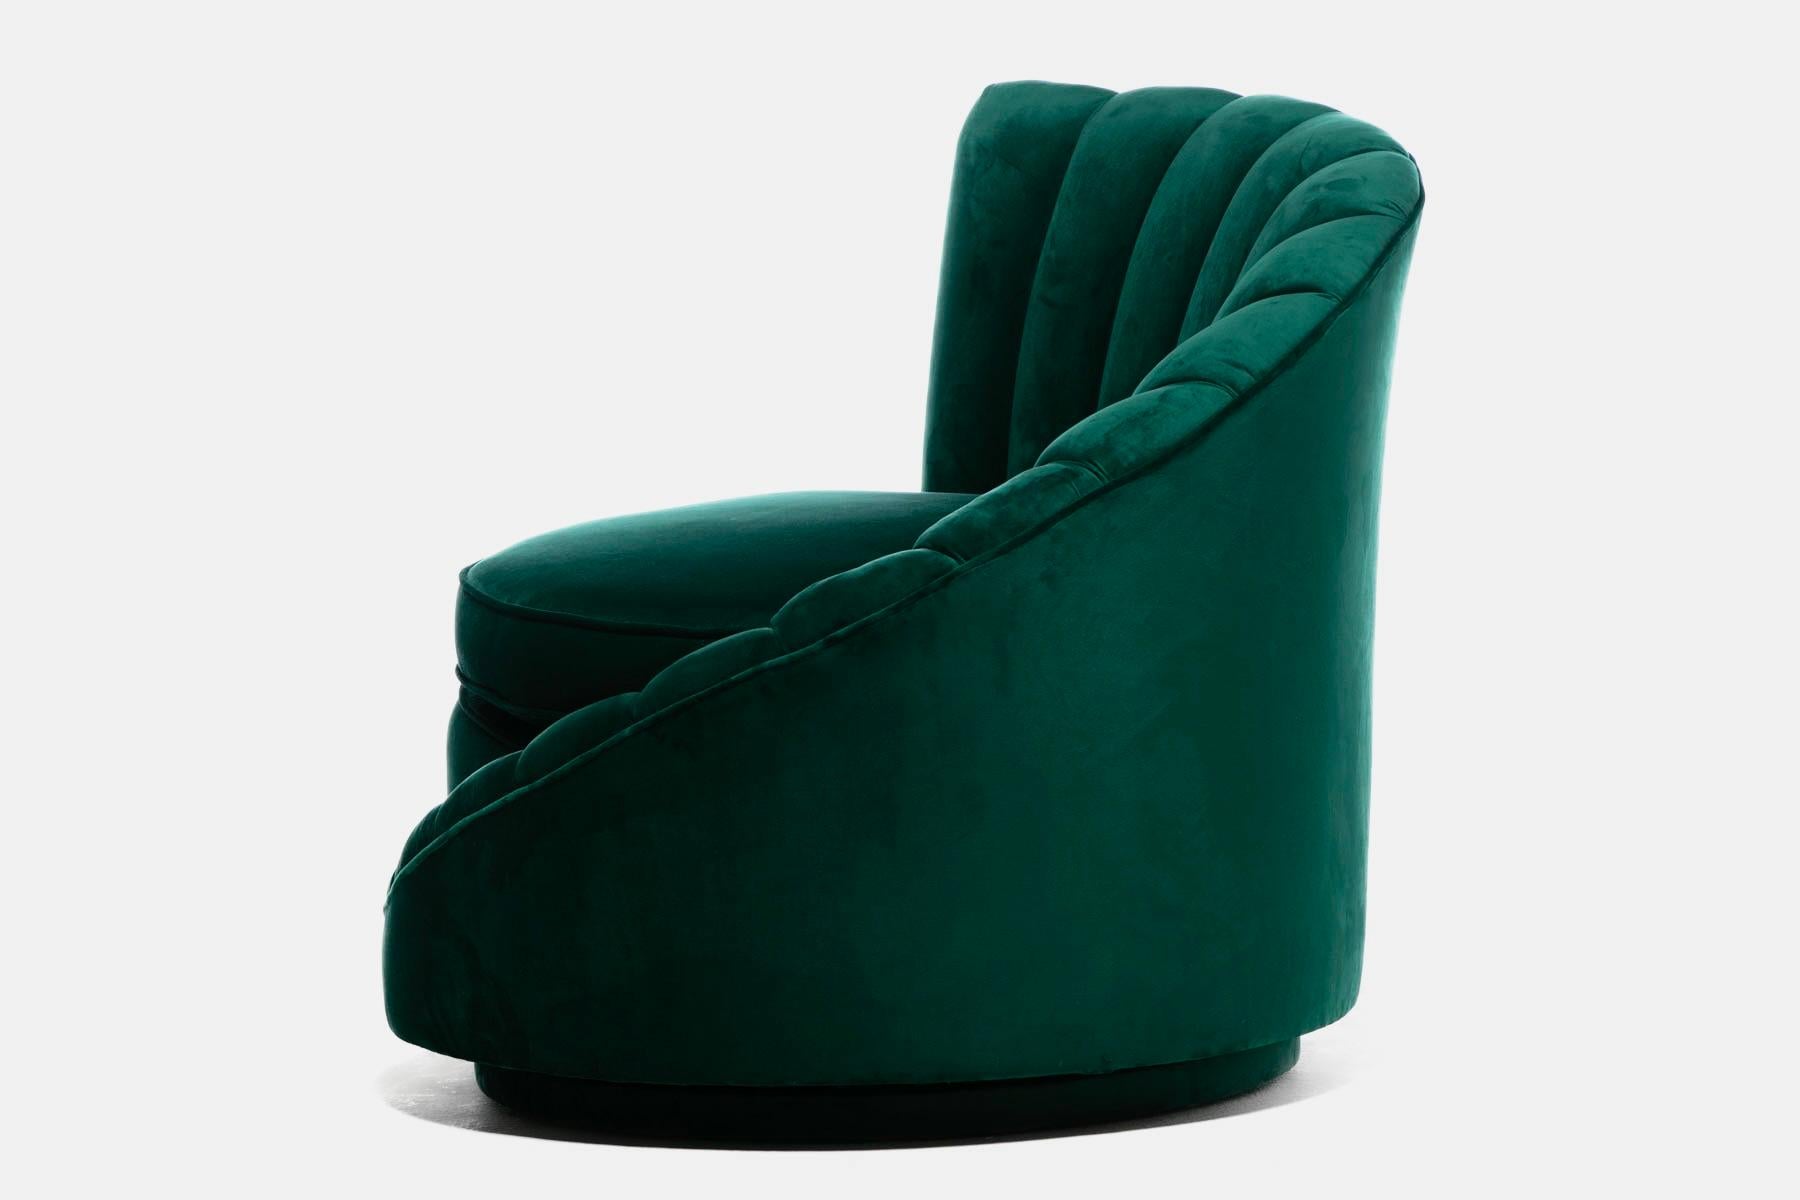 Hollywood Regency Glamorous Asymmetrical Swivel Chairs in Emerald Green Velvet For Sale 4